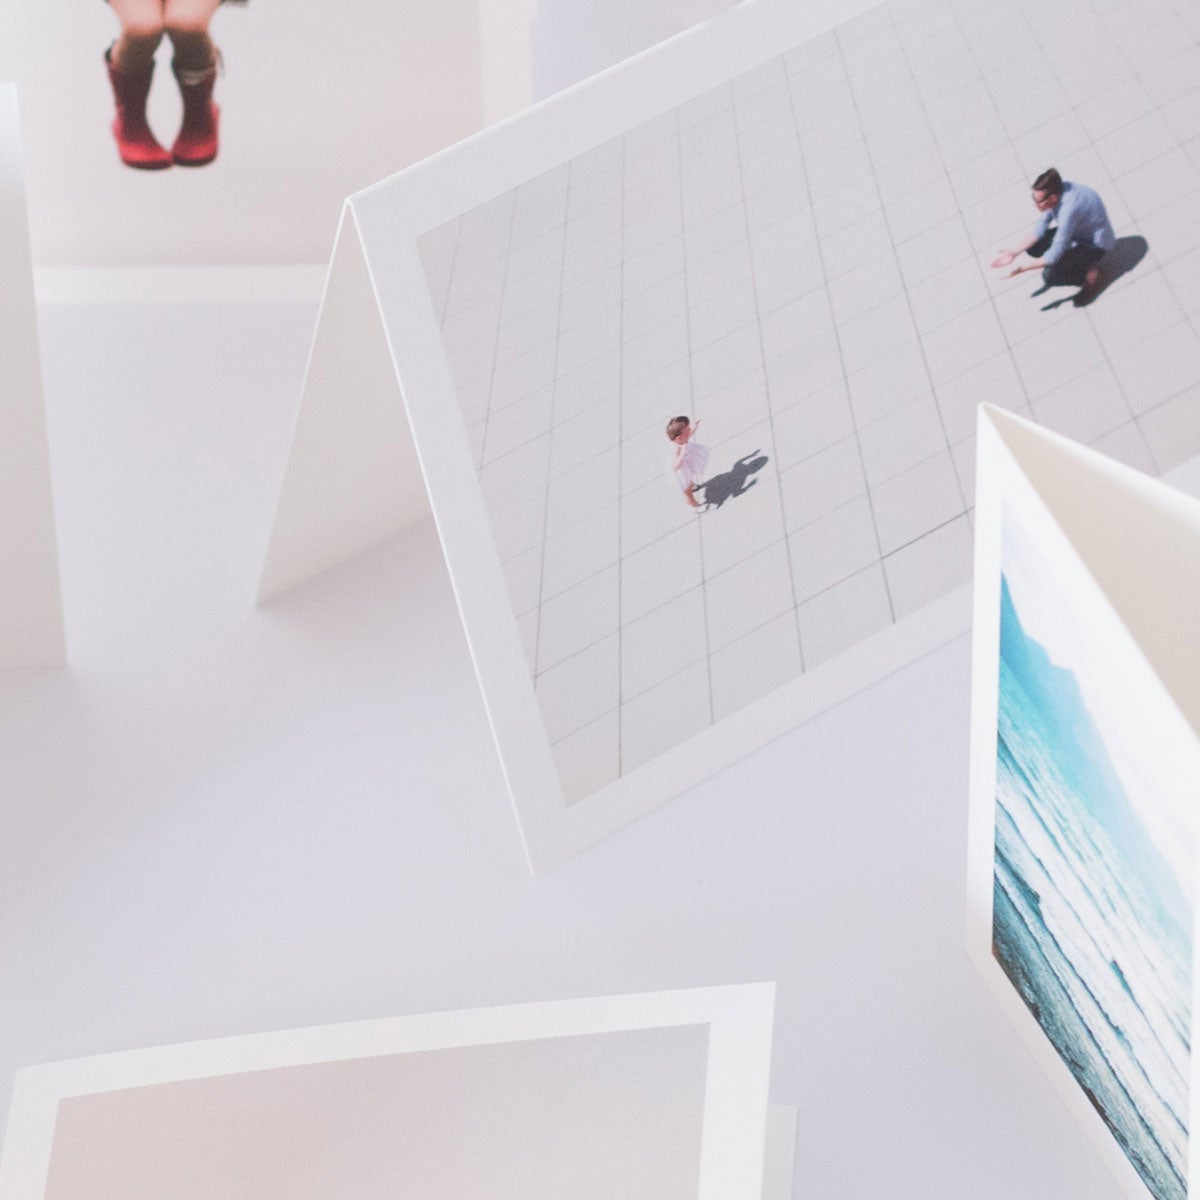 Folded Photo Cards – 5x7